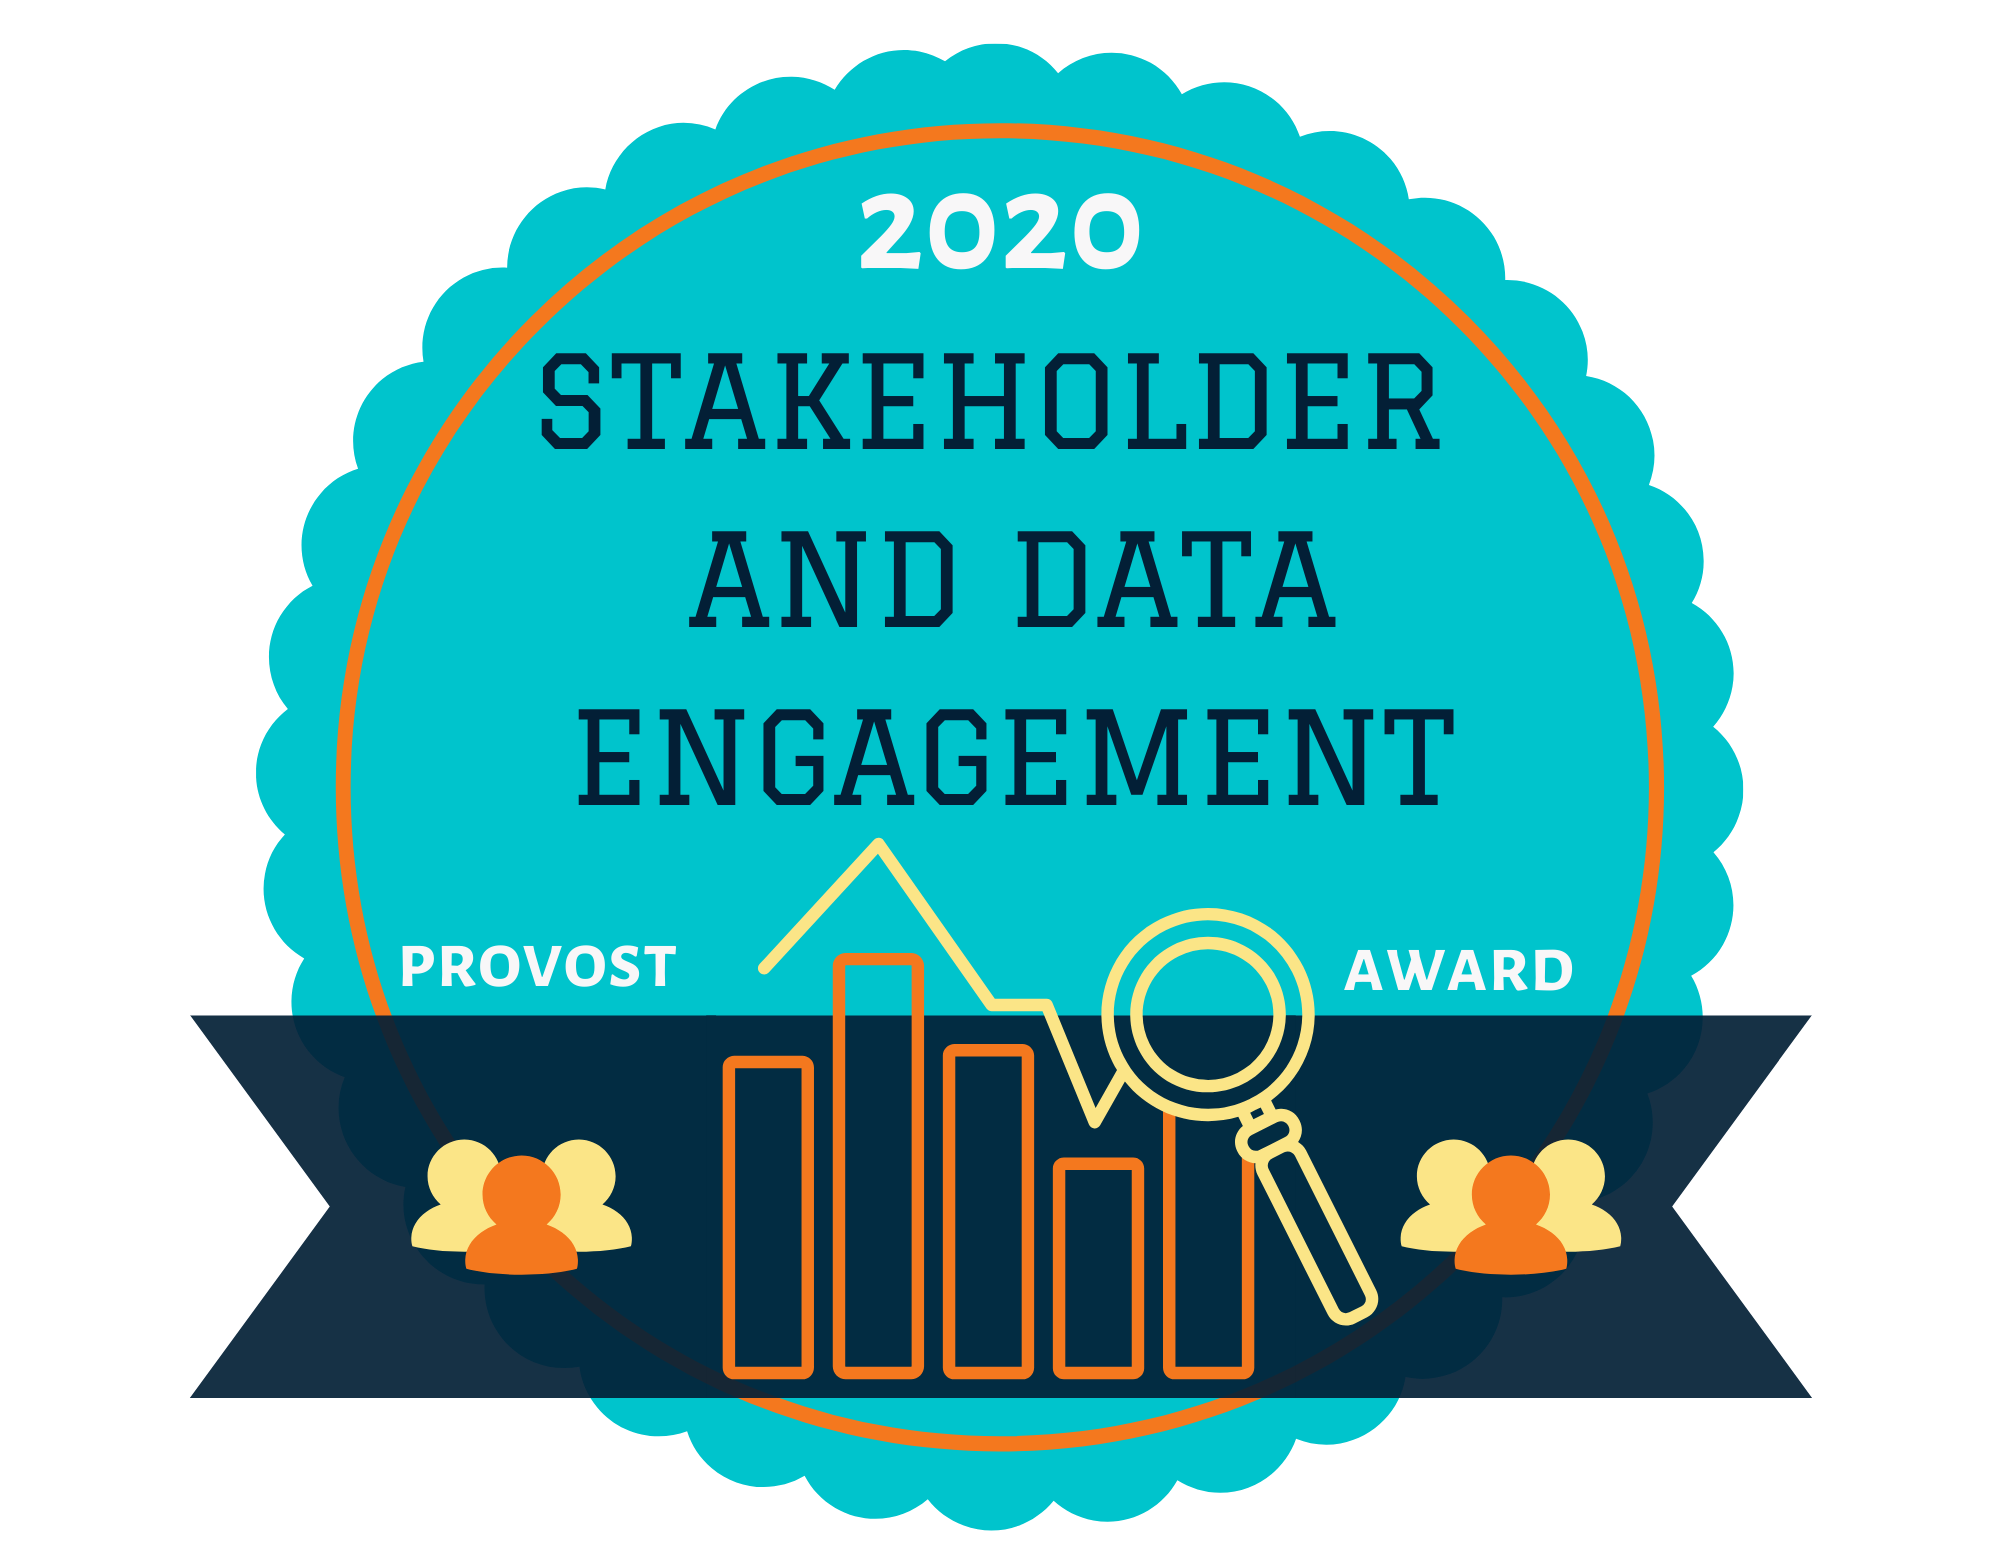 Stakeholder and Data Engagement 2020 Award Winner